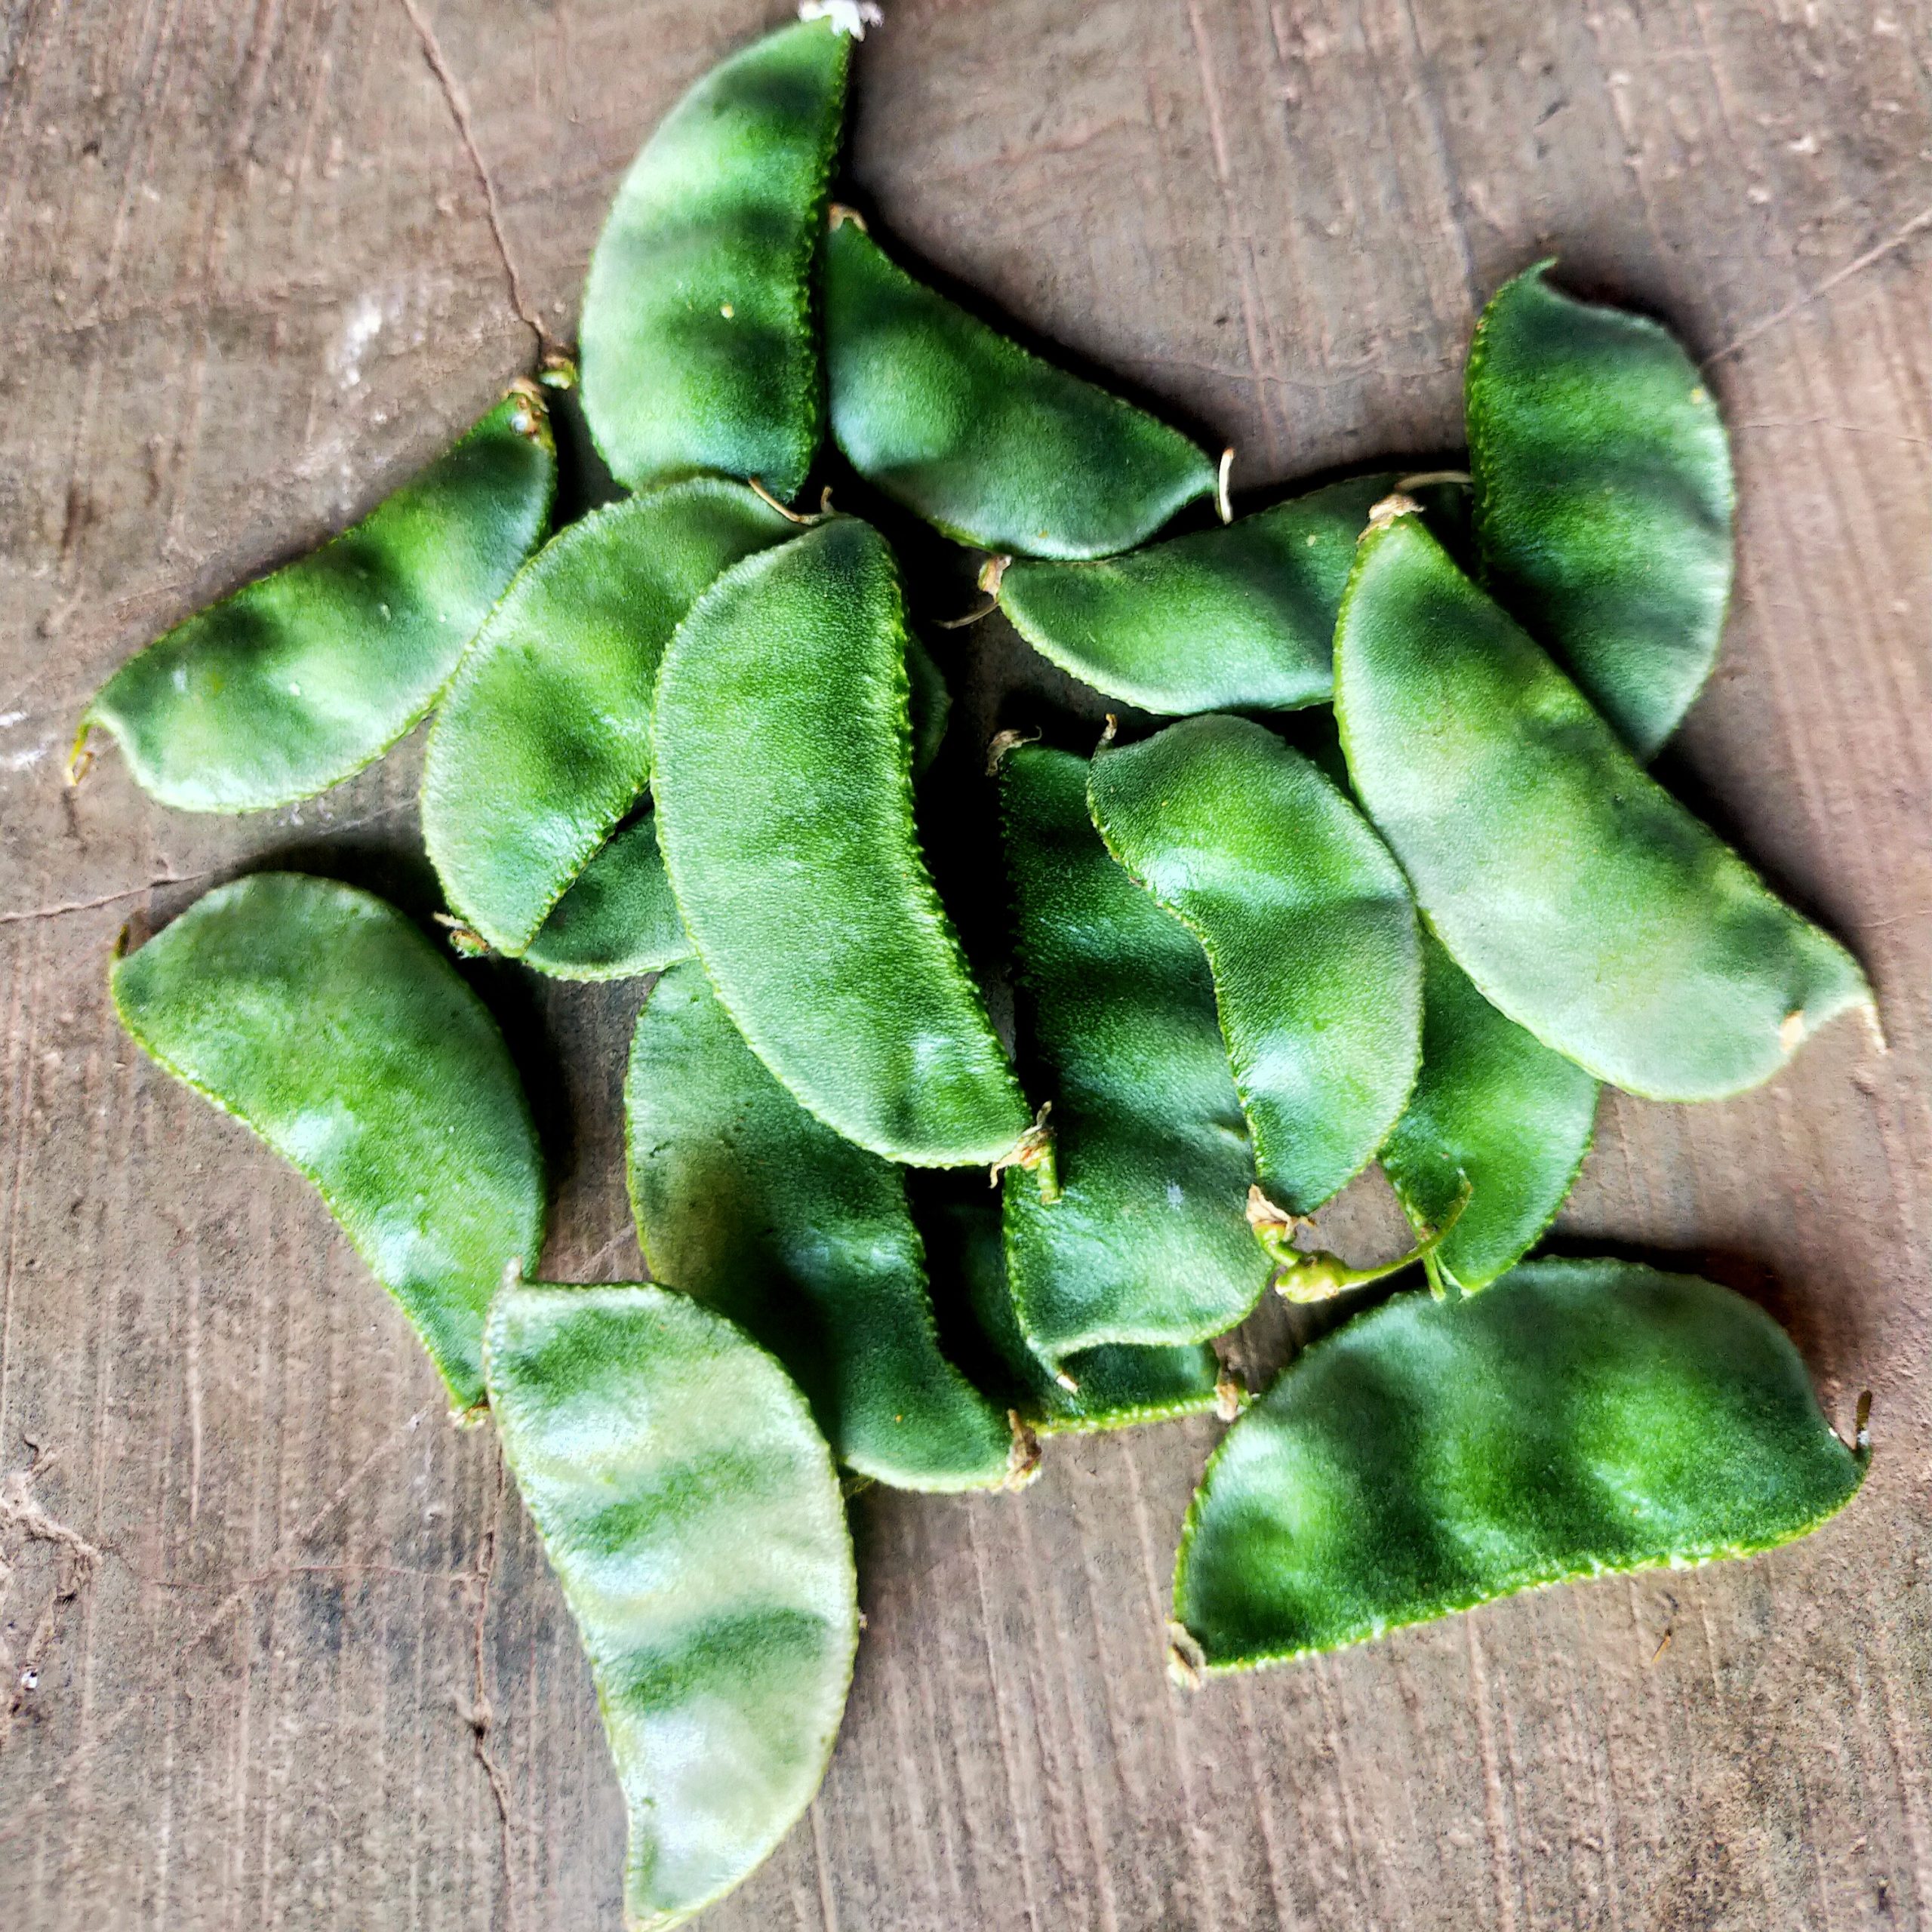 Green papdi beans